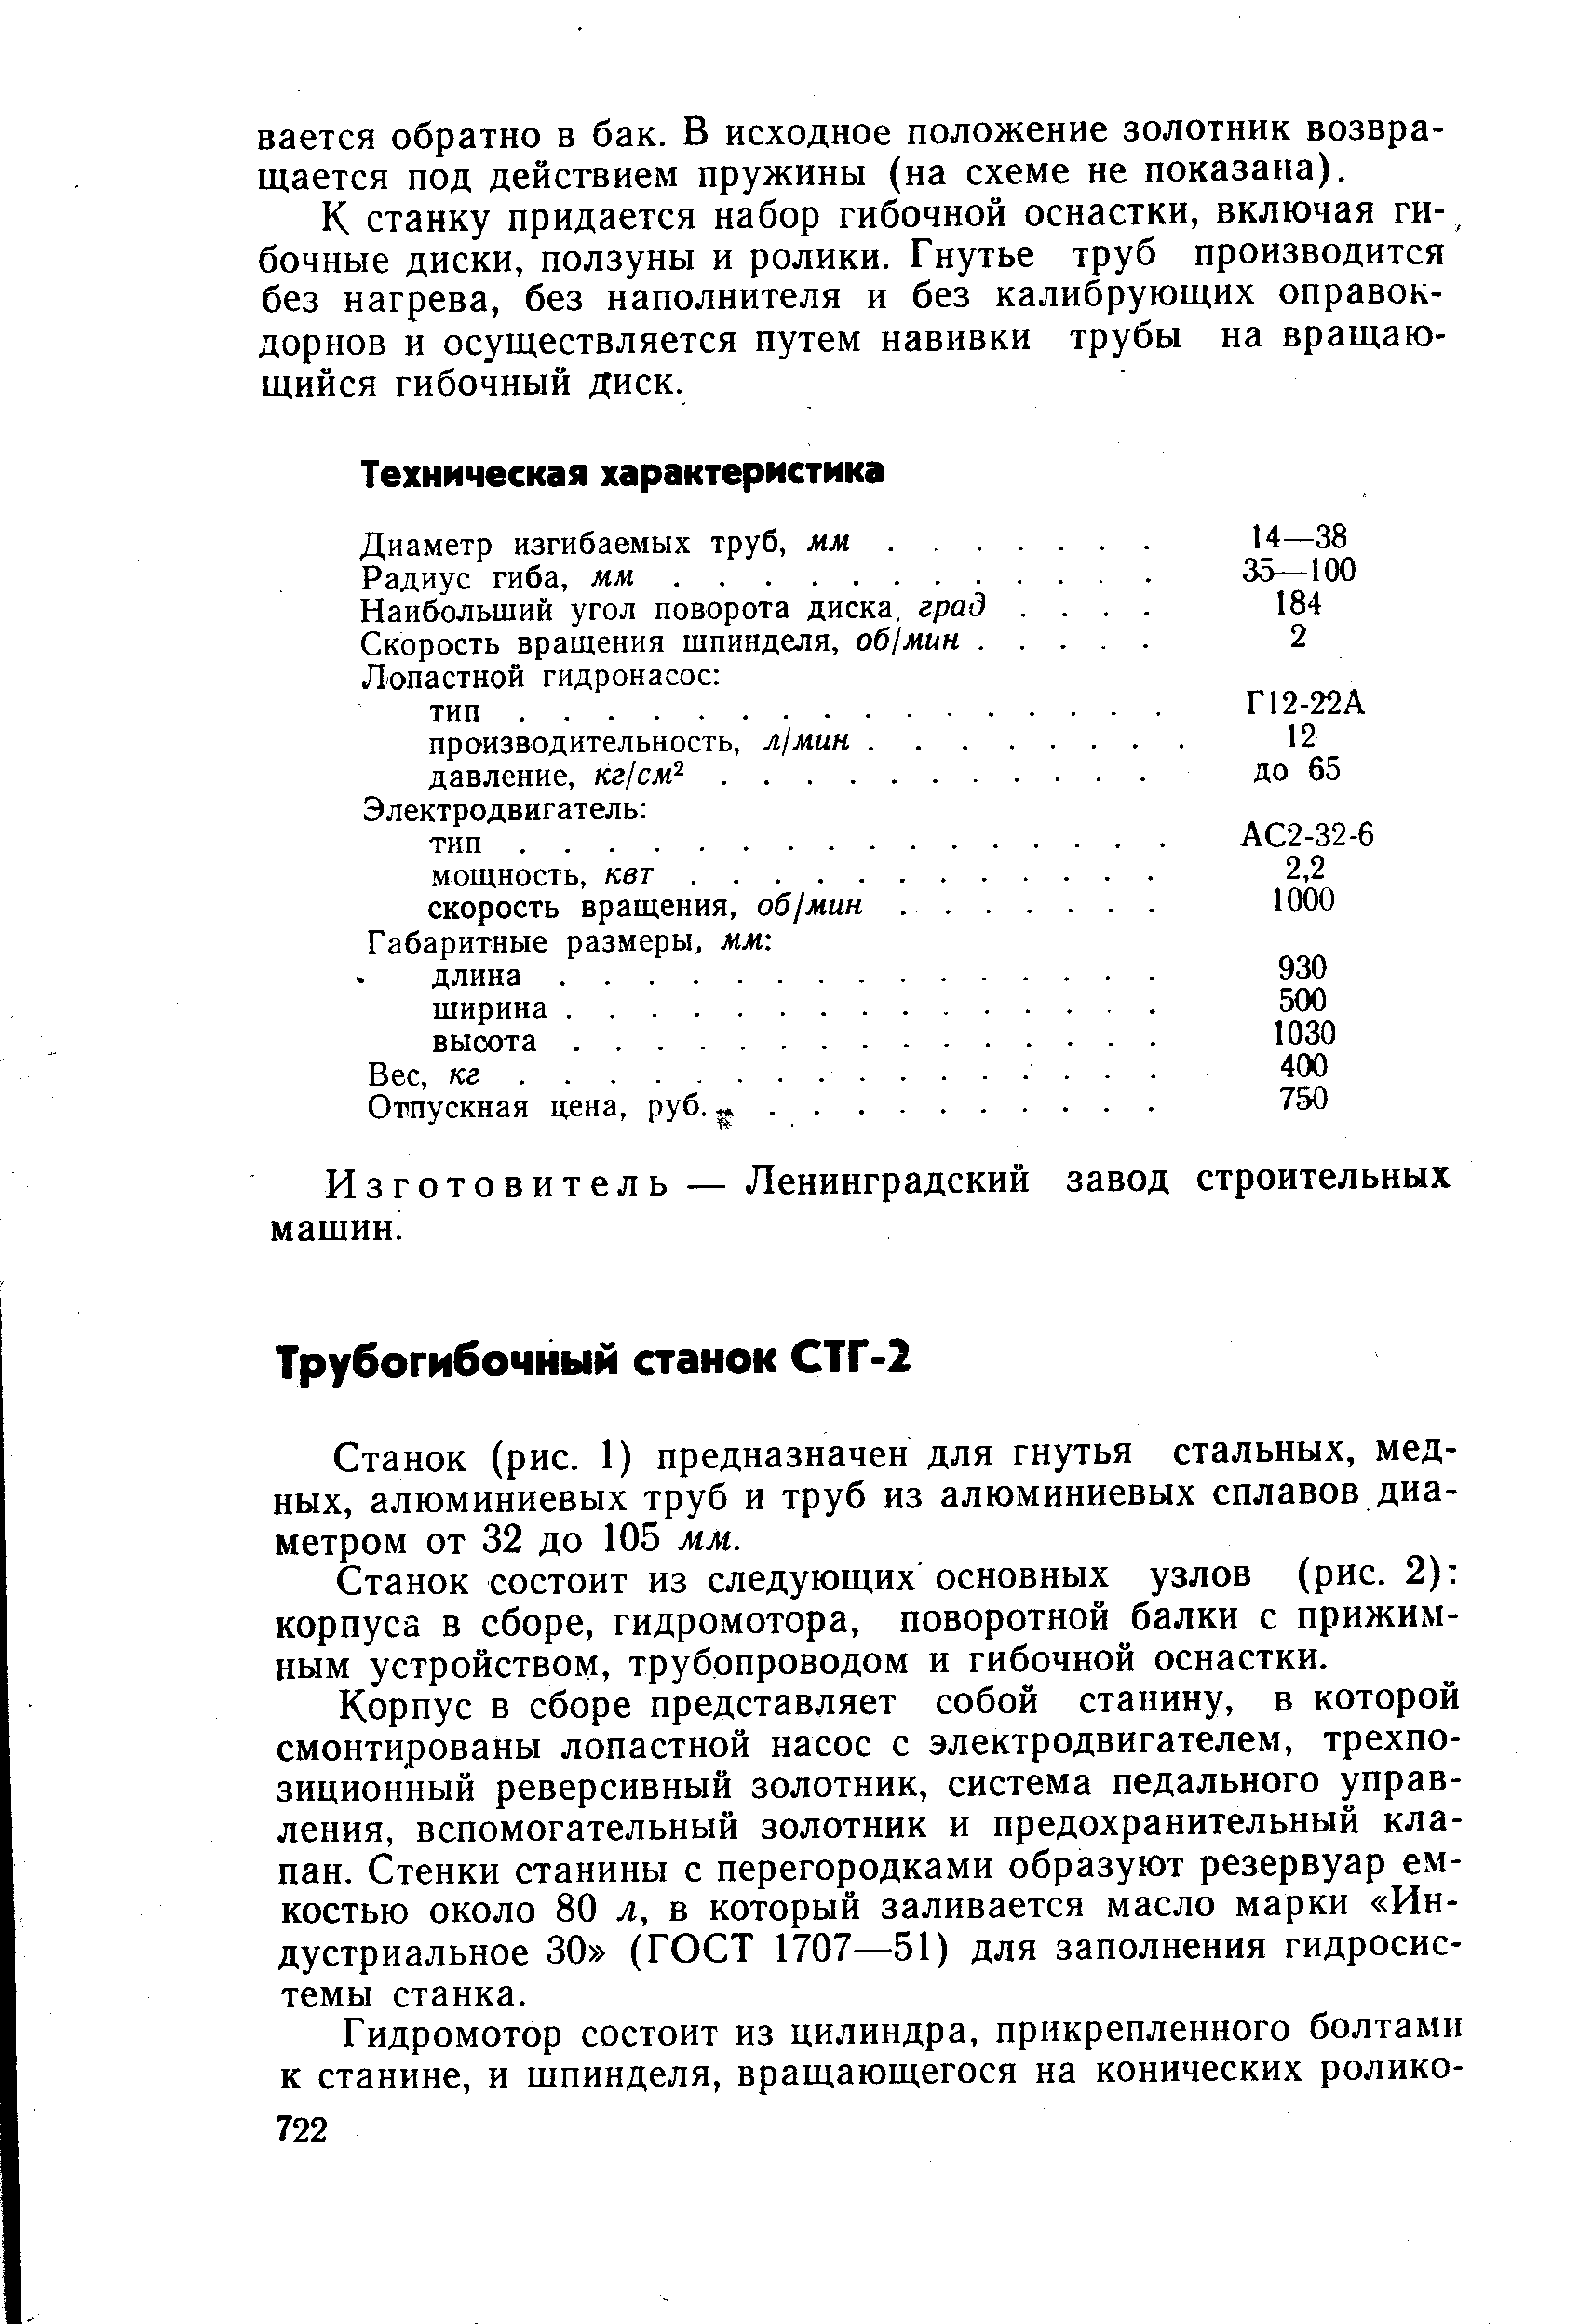 Изготовитель — Ленинградский завод строительных машин.
